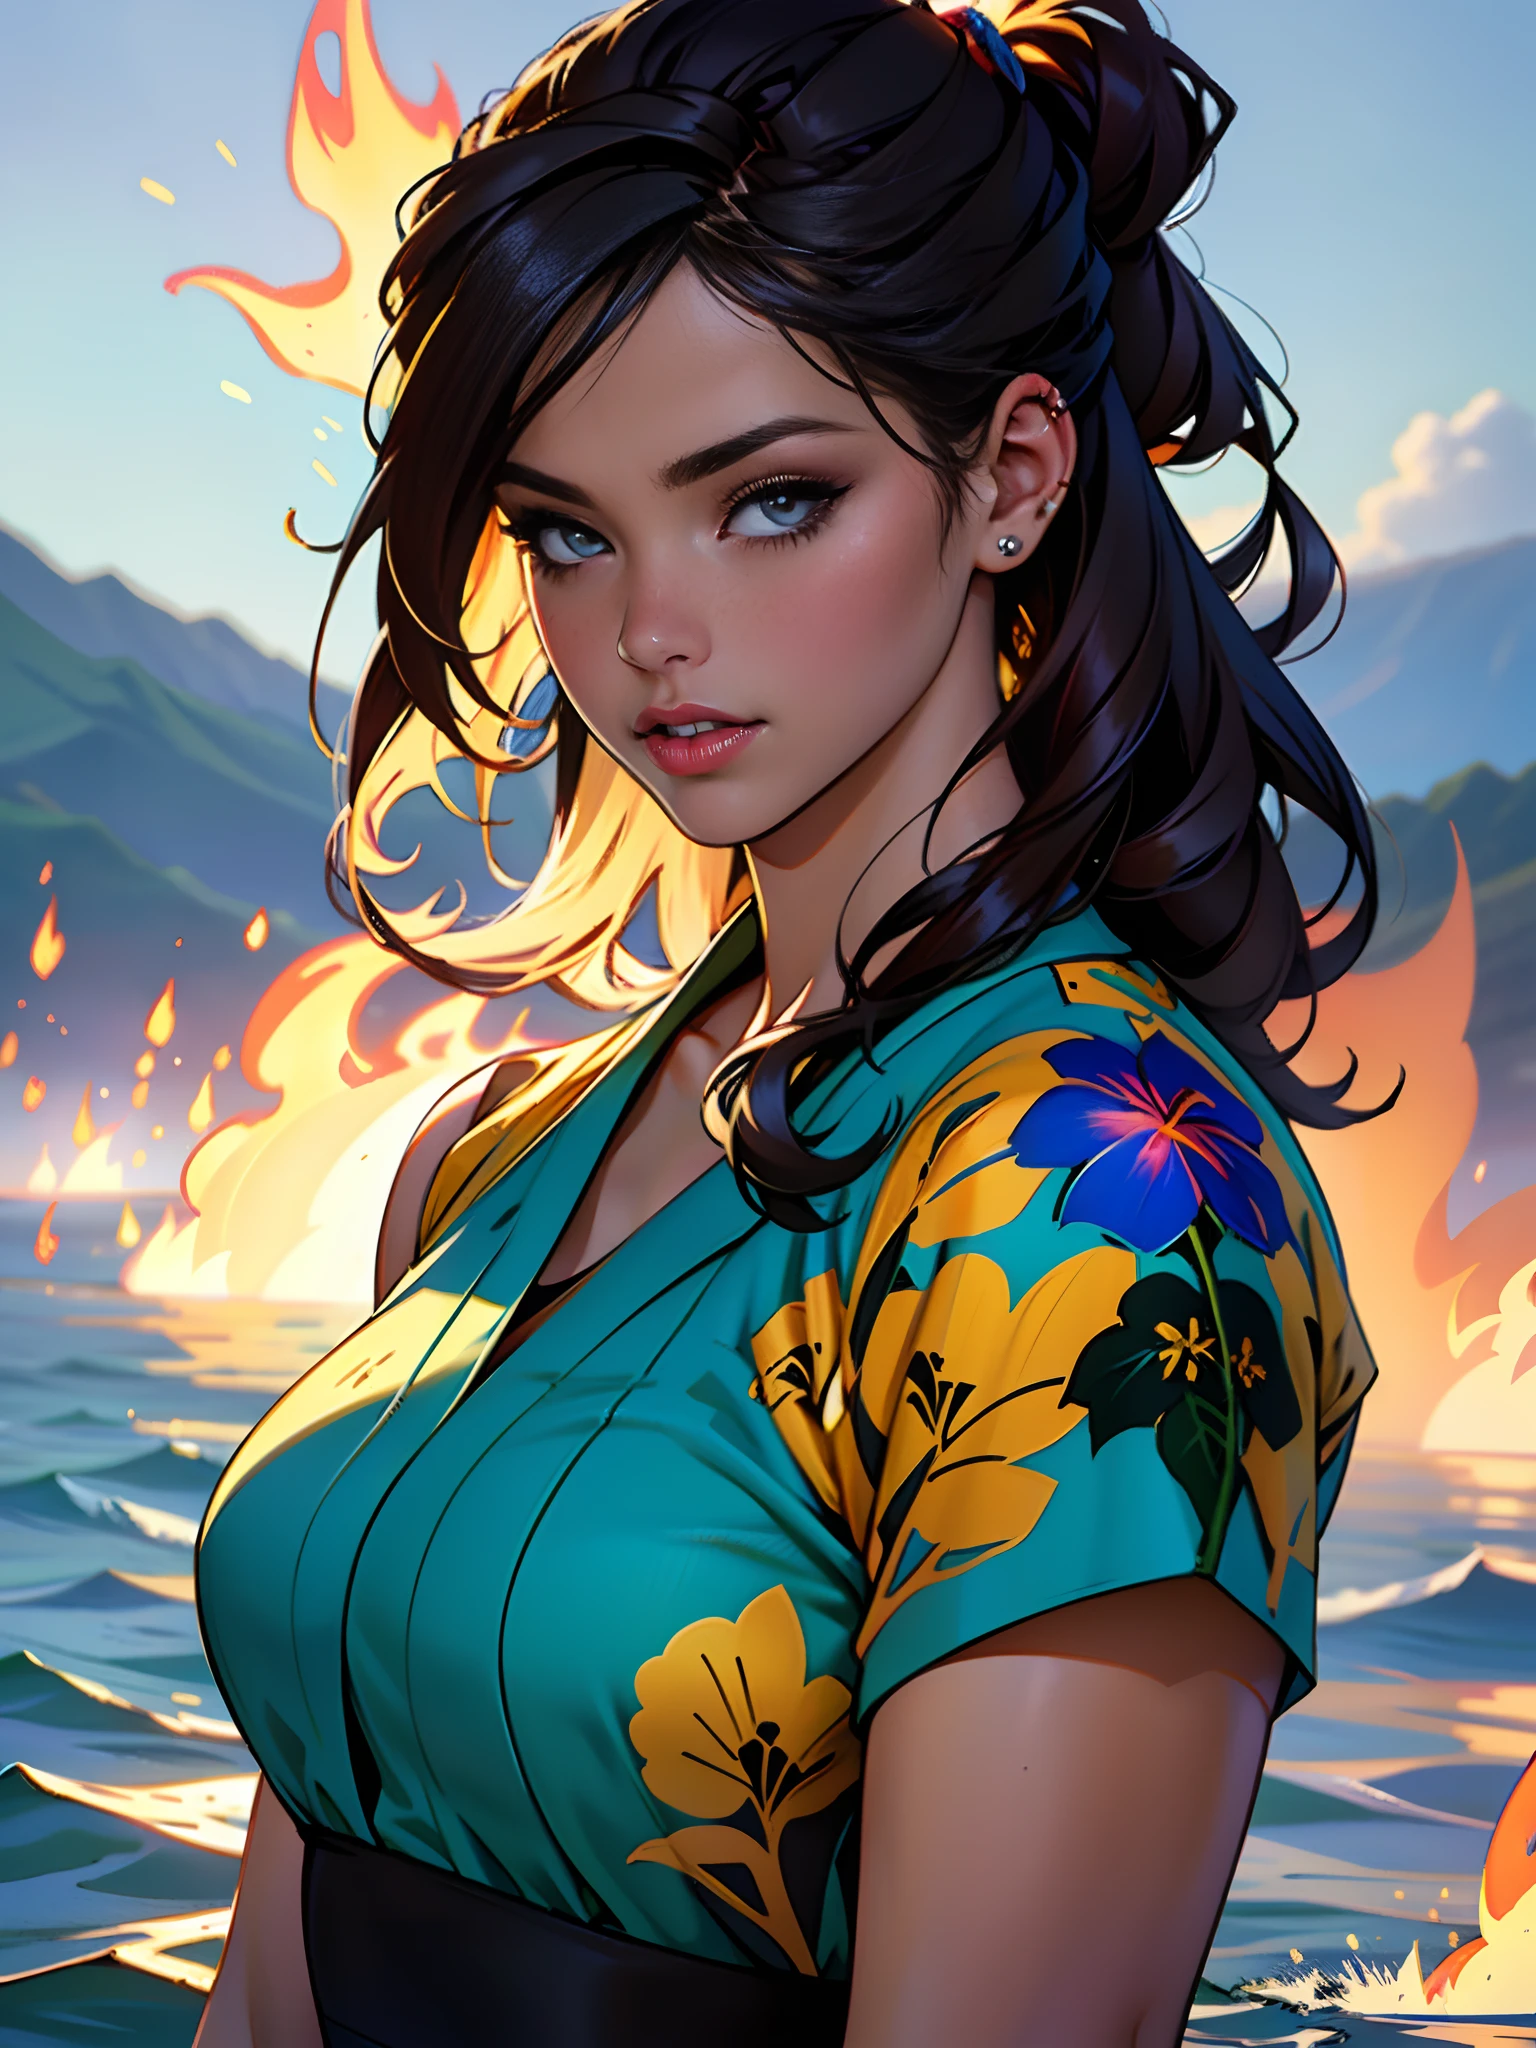 夏威夷拉海纳背部着火, 1个女孩从水景画画, Jaime Frias 的風格, 最好的品質, 實際的, 屢獲殊榮的彩色插圖, (複雜的細節: 1.2), (精細細節)